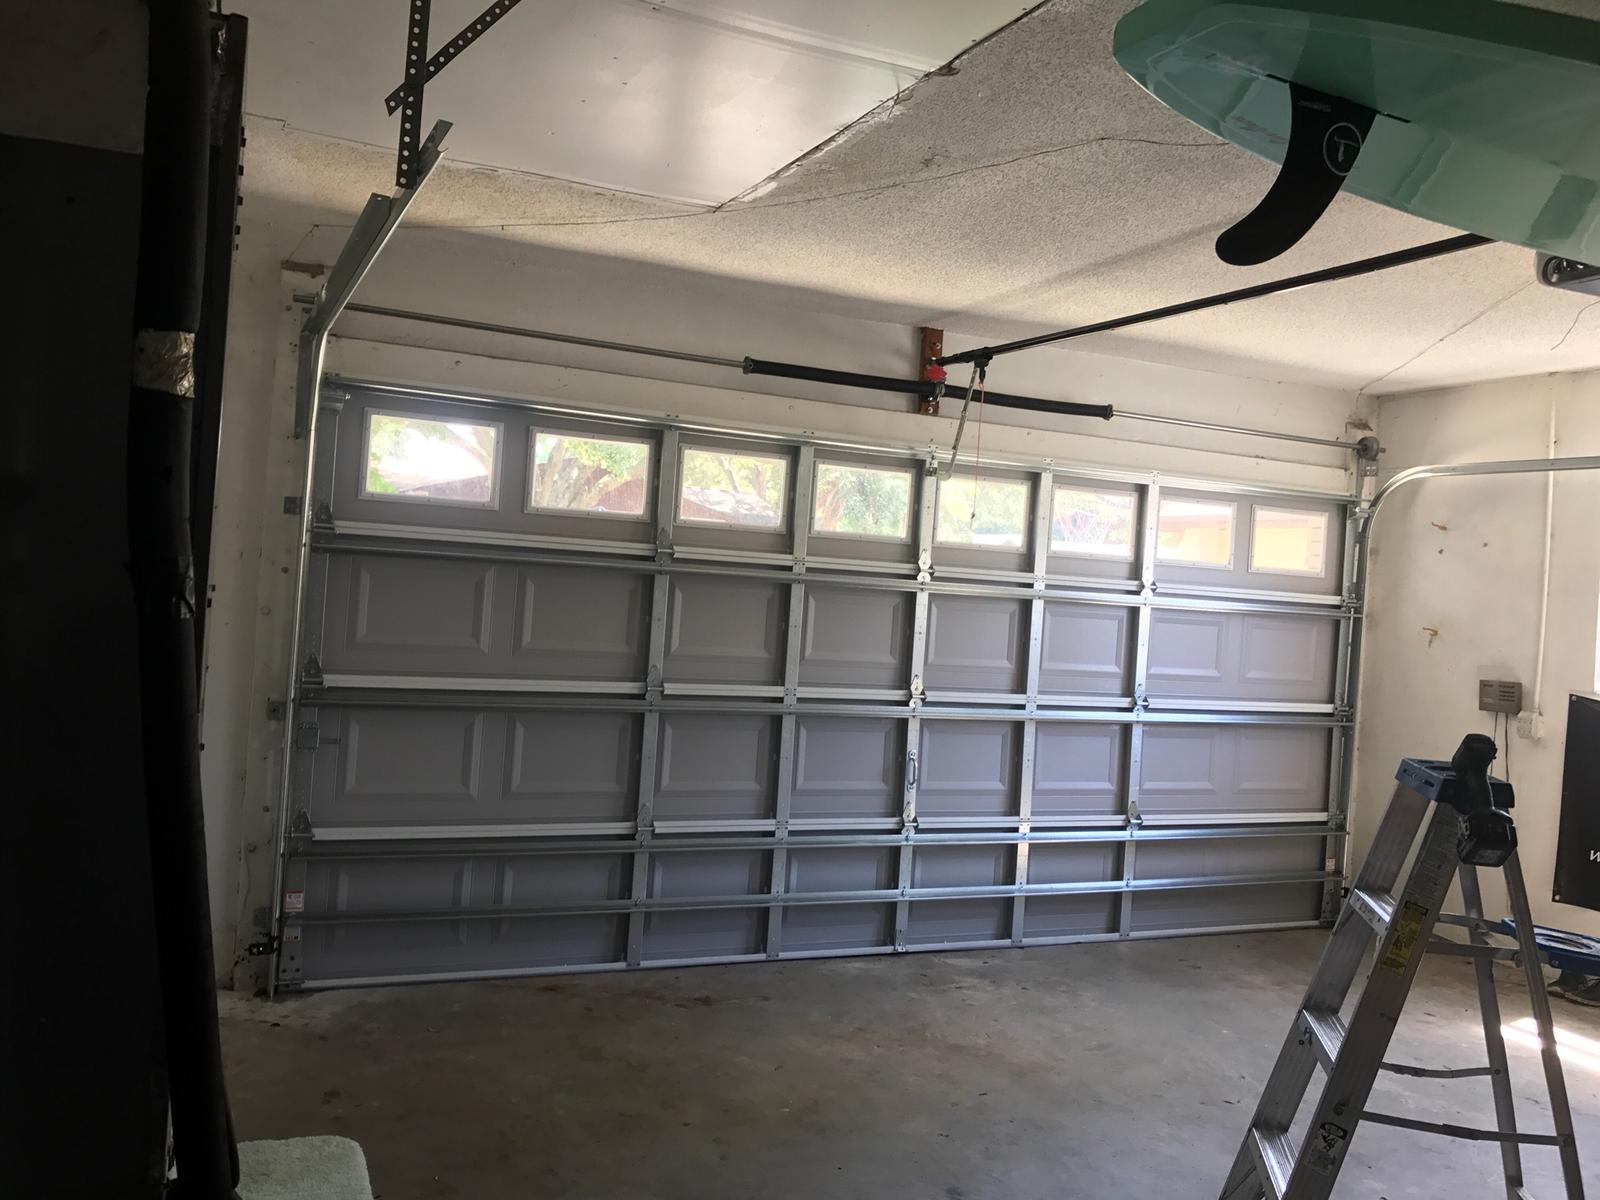 Amarr garage door